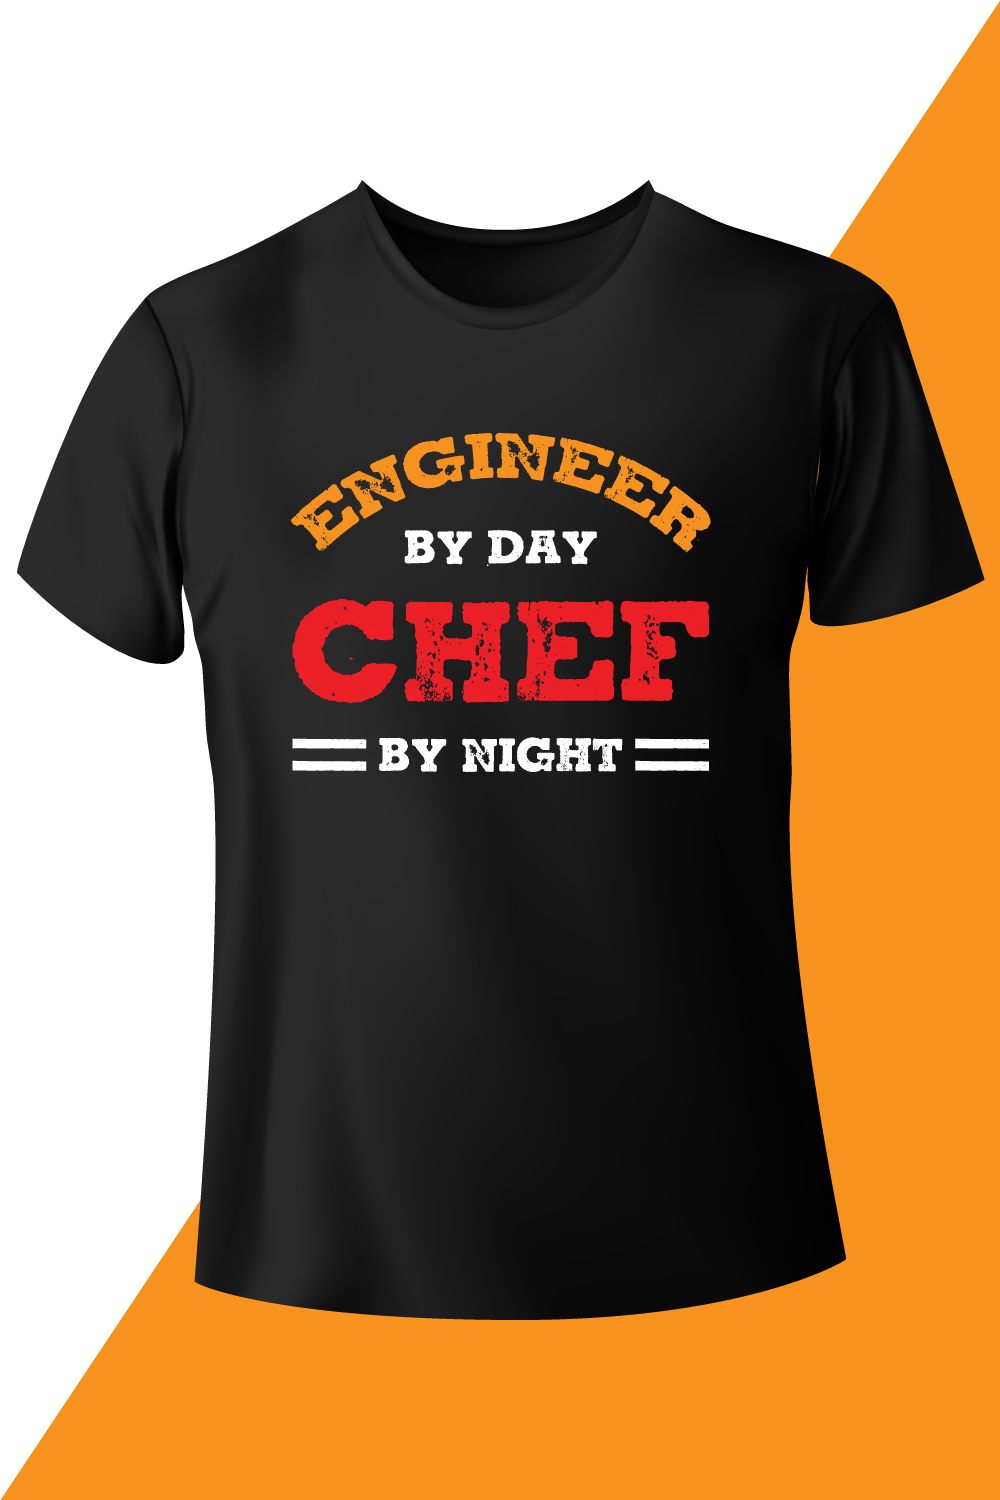 Modern Engineer T-shirt Design Vector Template pinterest image.